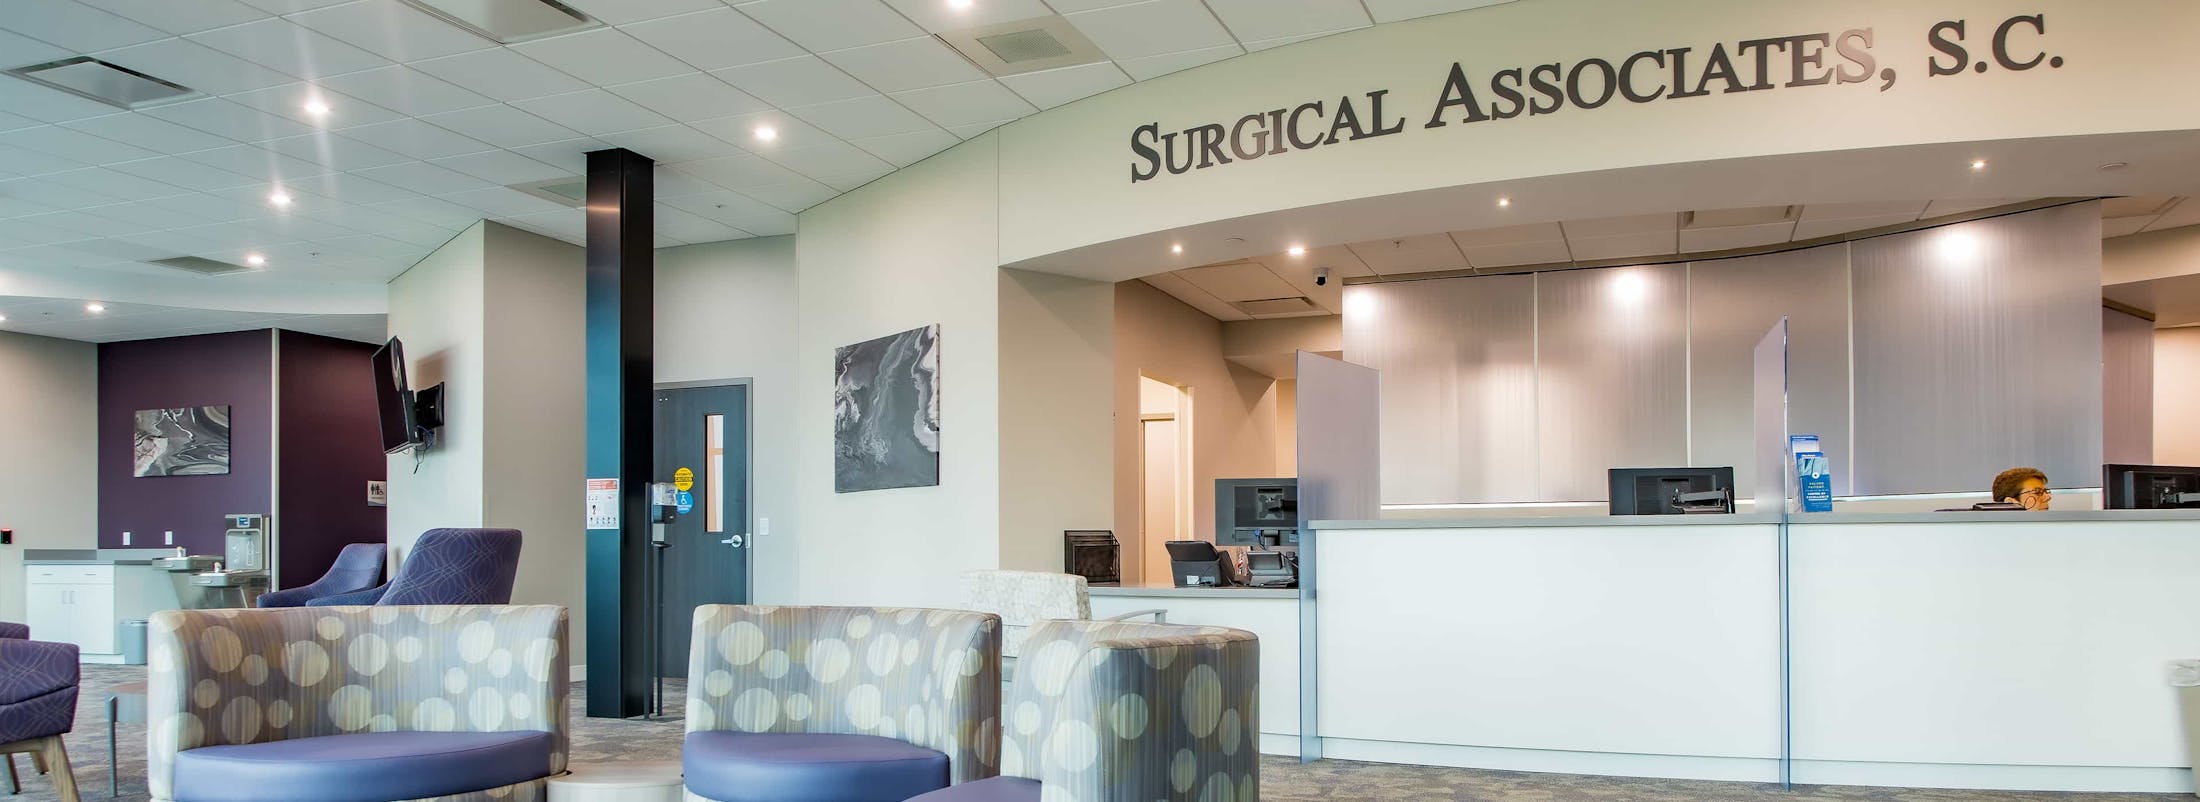 Surgical Associates Lobby